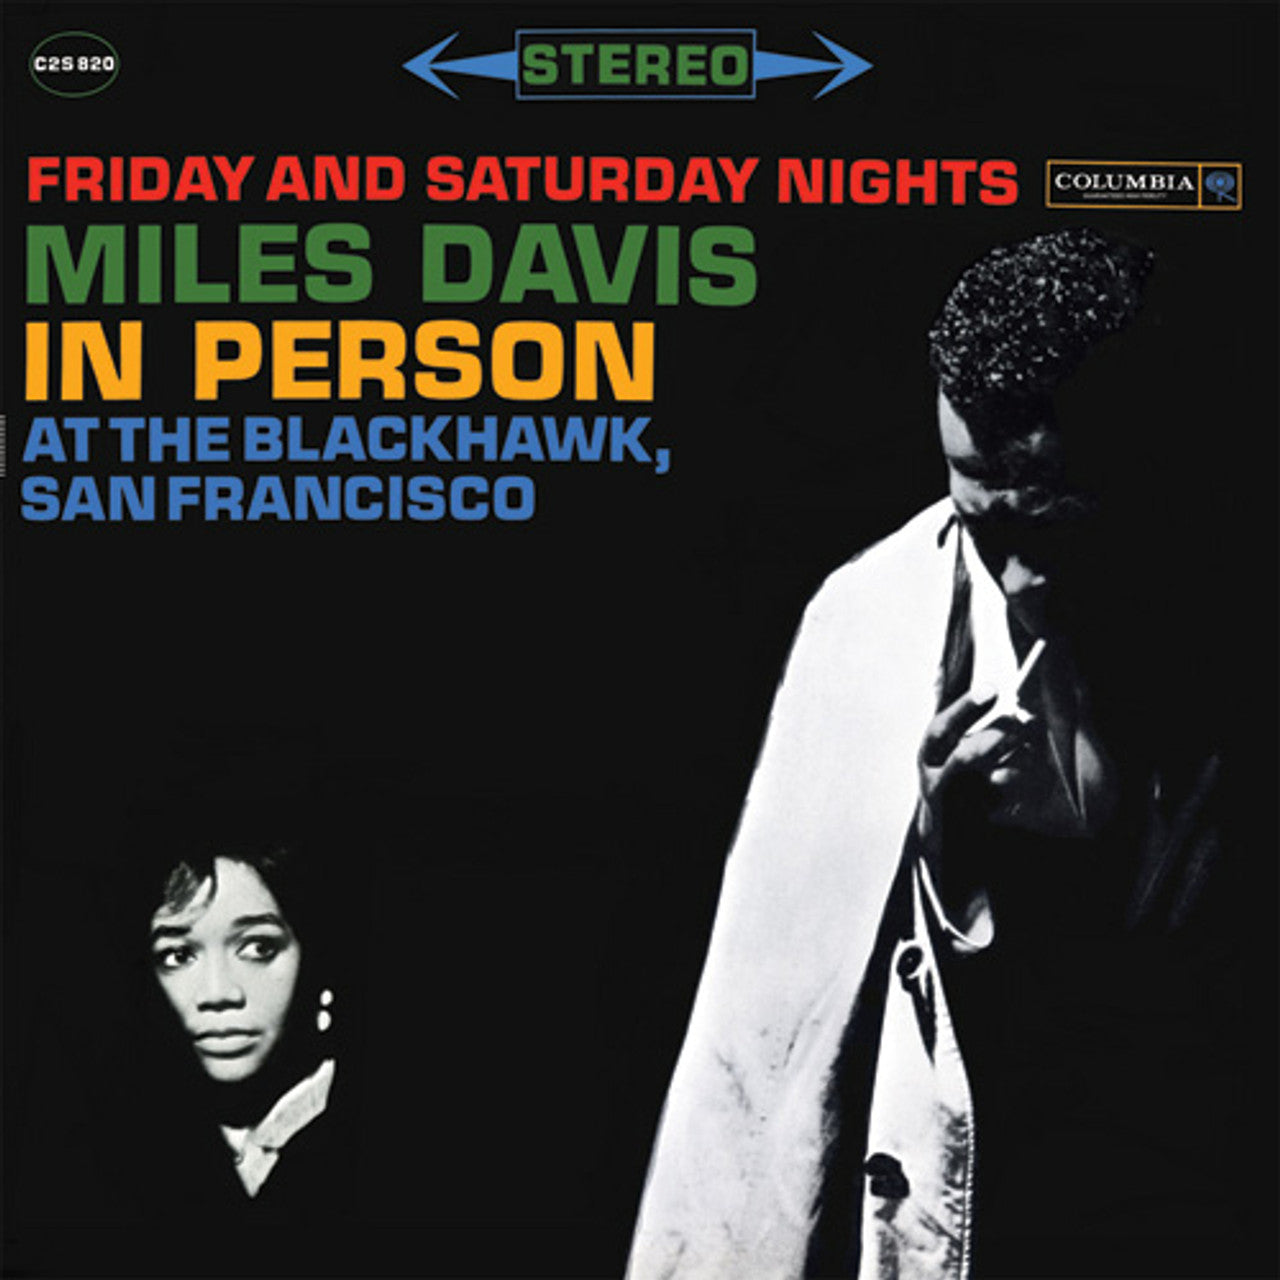 Miles Davis - En persona en el Blackhawk, San Francisco viernes y sábado por la noche - Impex LP